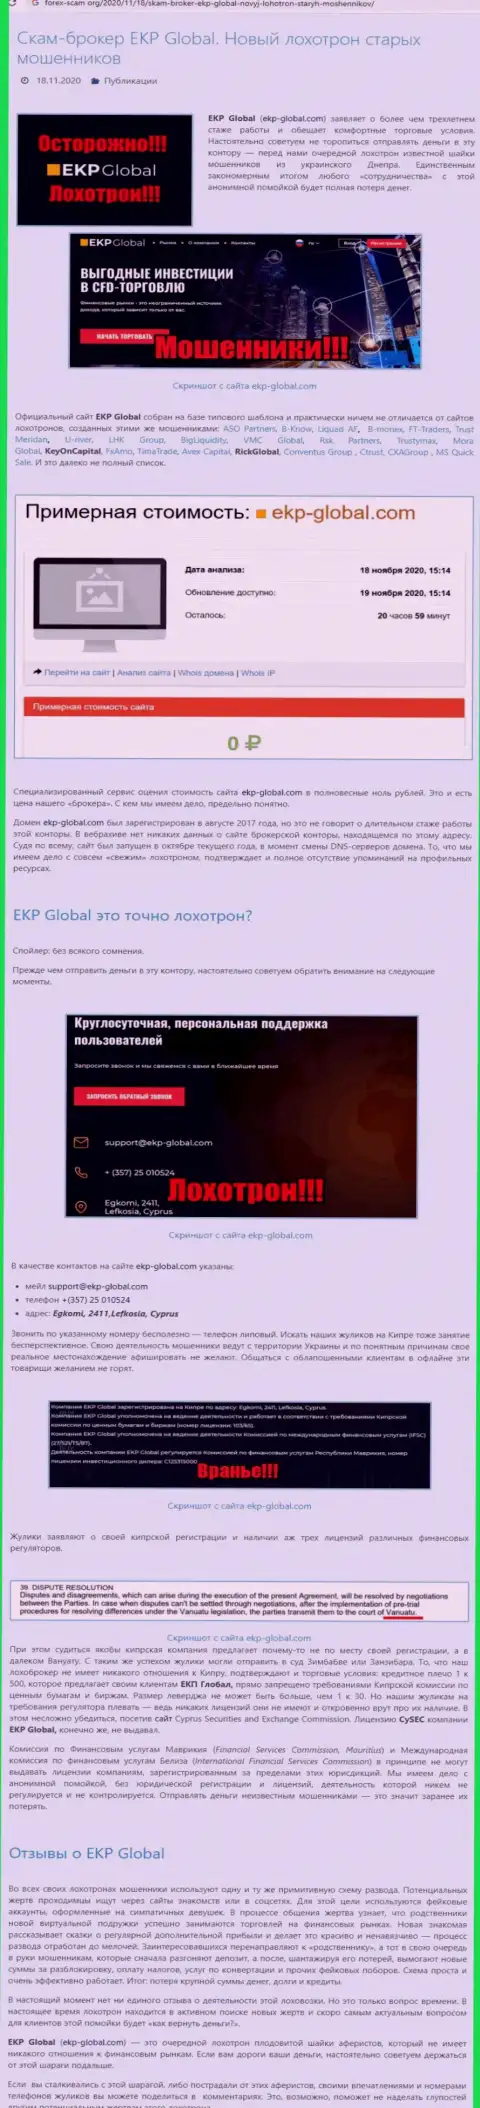 С компании ЕКП-Глобал Ком вывести вложения не выйдет - это обзор проделок internet мошенников